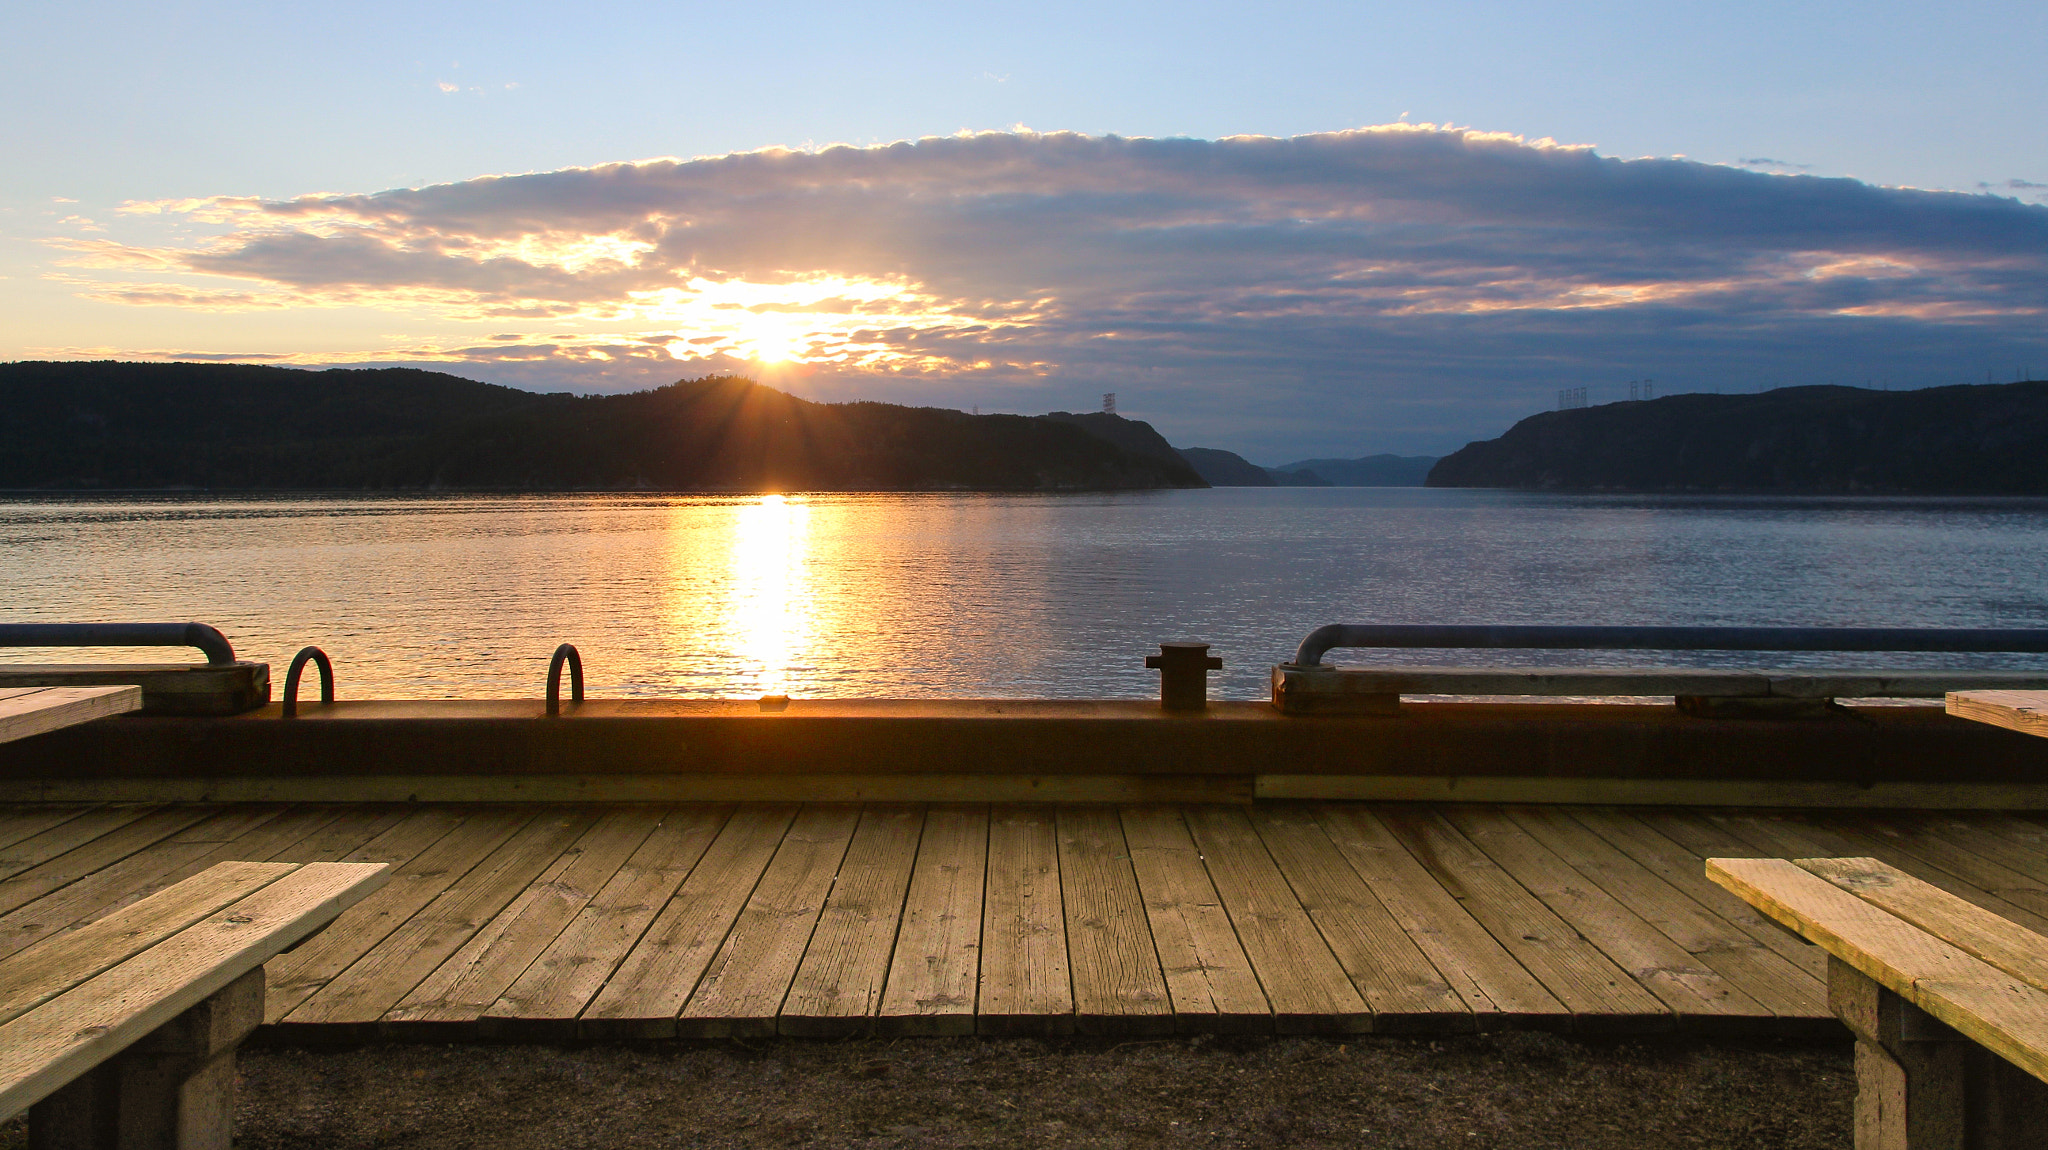 Canon EOS 600D (Rebel EOS T3i / EOS Kiss X5) + Sigma 17-50mm f/2.8 OS HSM sample photo. Coucher de soleil sur le fjord photography